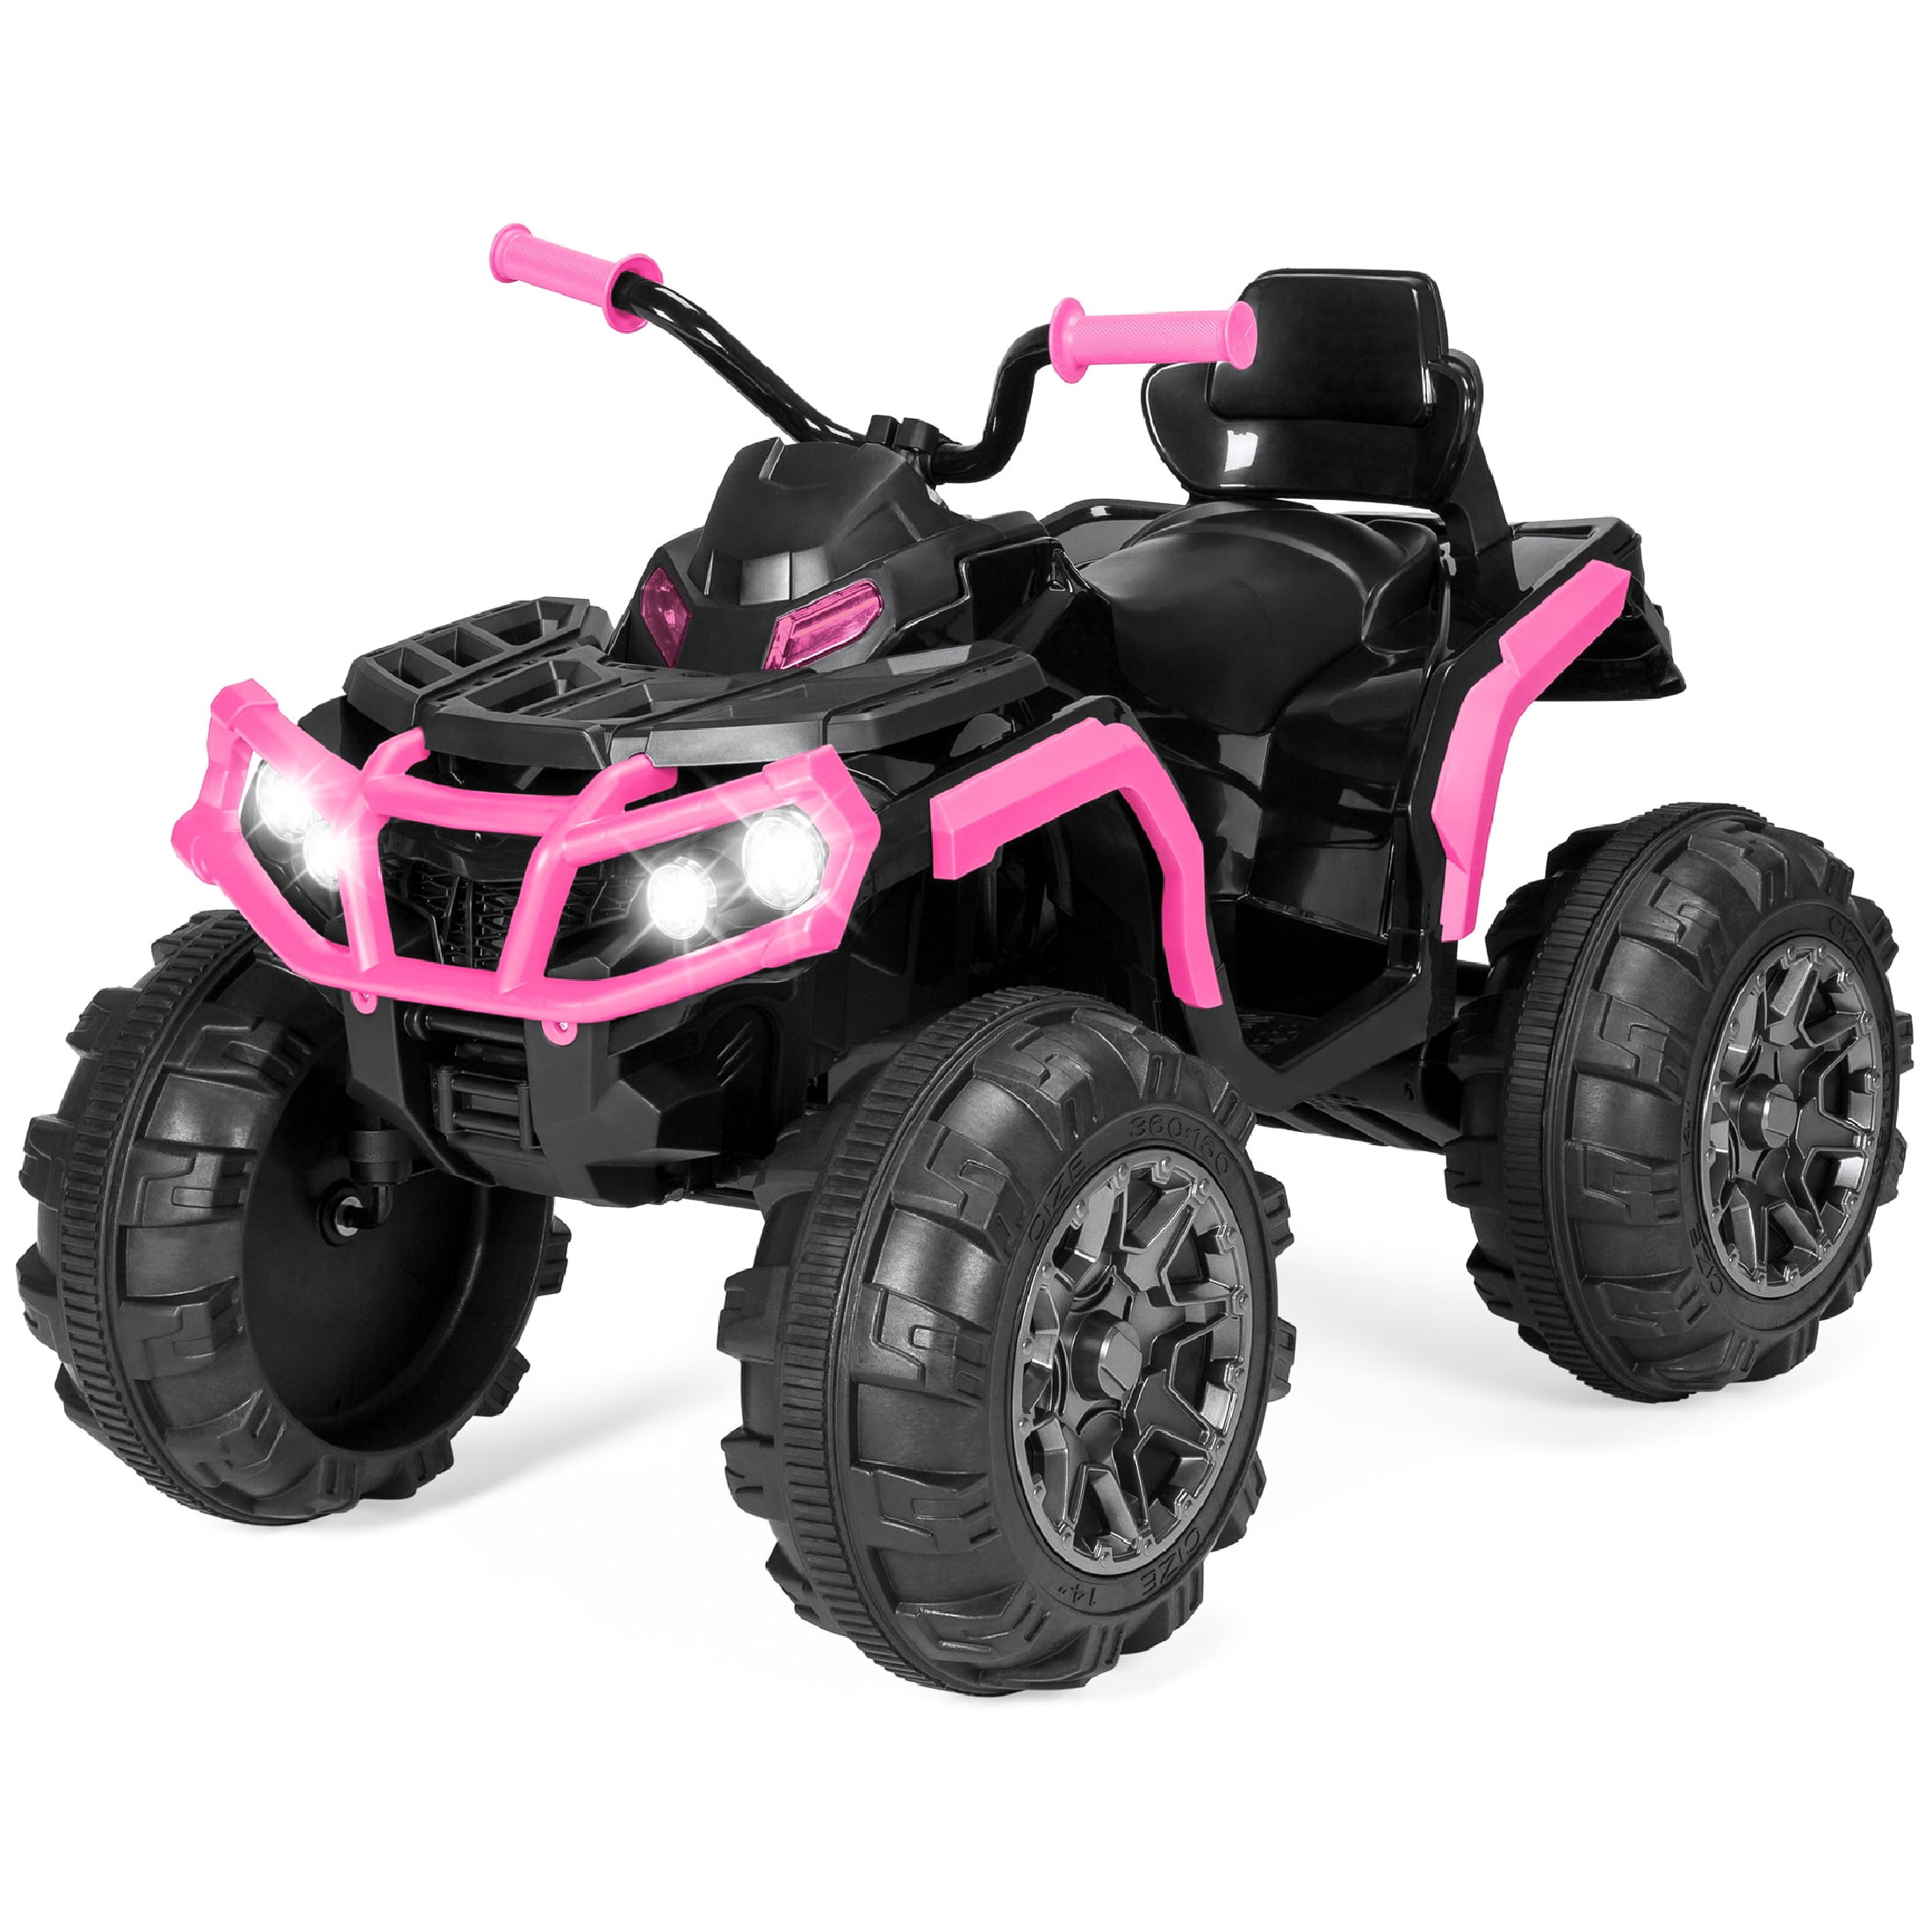 PINK 12V Kids Ride On ATV Car Quad 4 Wheels Suspension Toy W/ Led Lights Sounds 